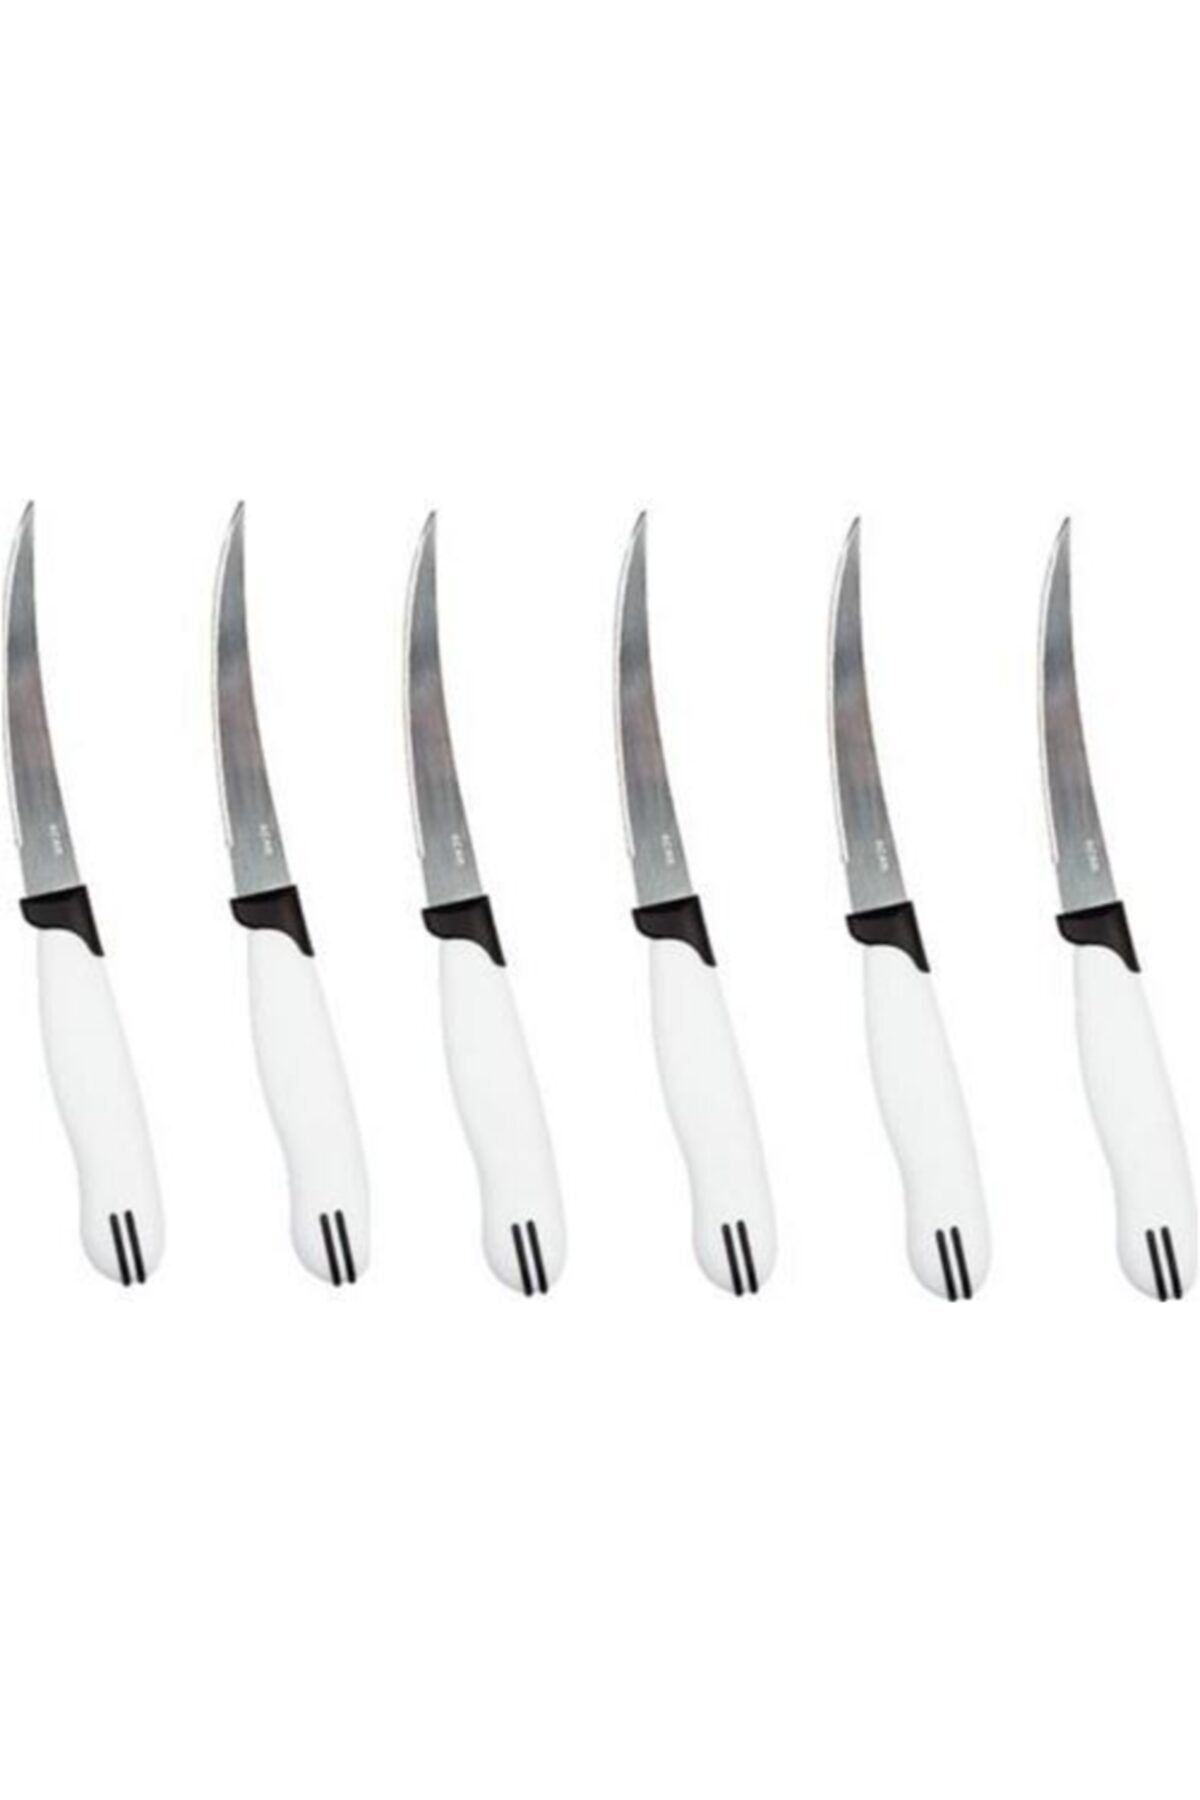 ACAR Beyaz Saplı Paslanmaz Çelik 6'lı Meyve Ve Sebze Bıçak Takımı